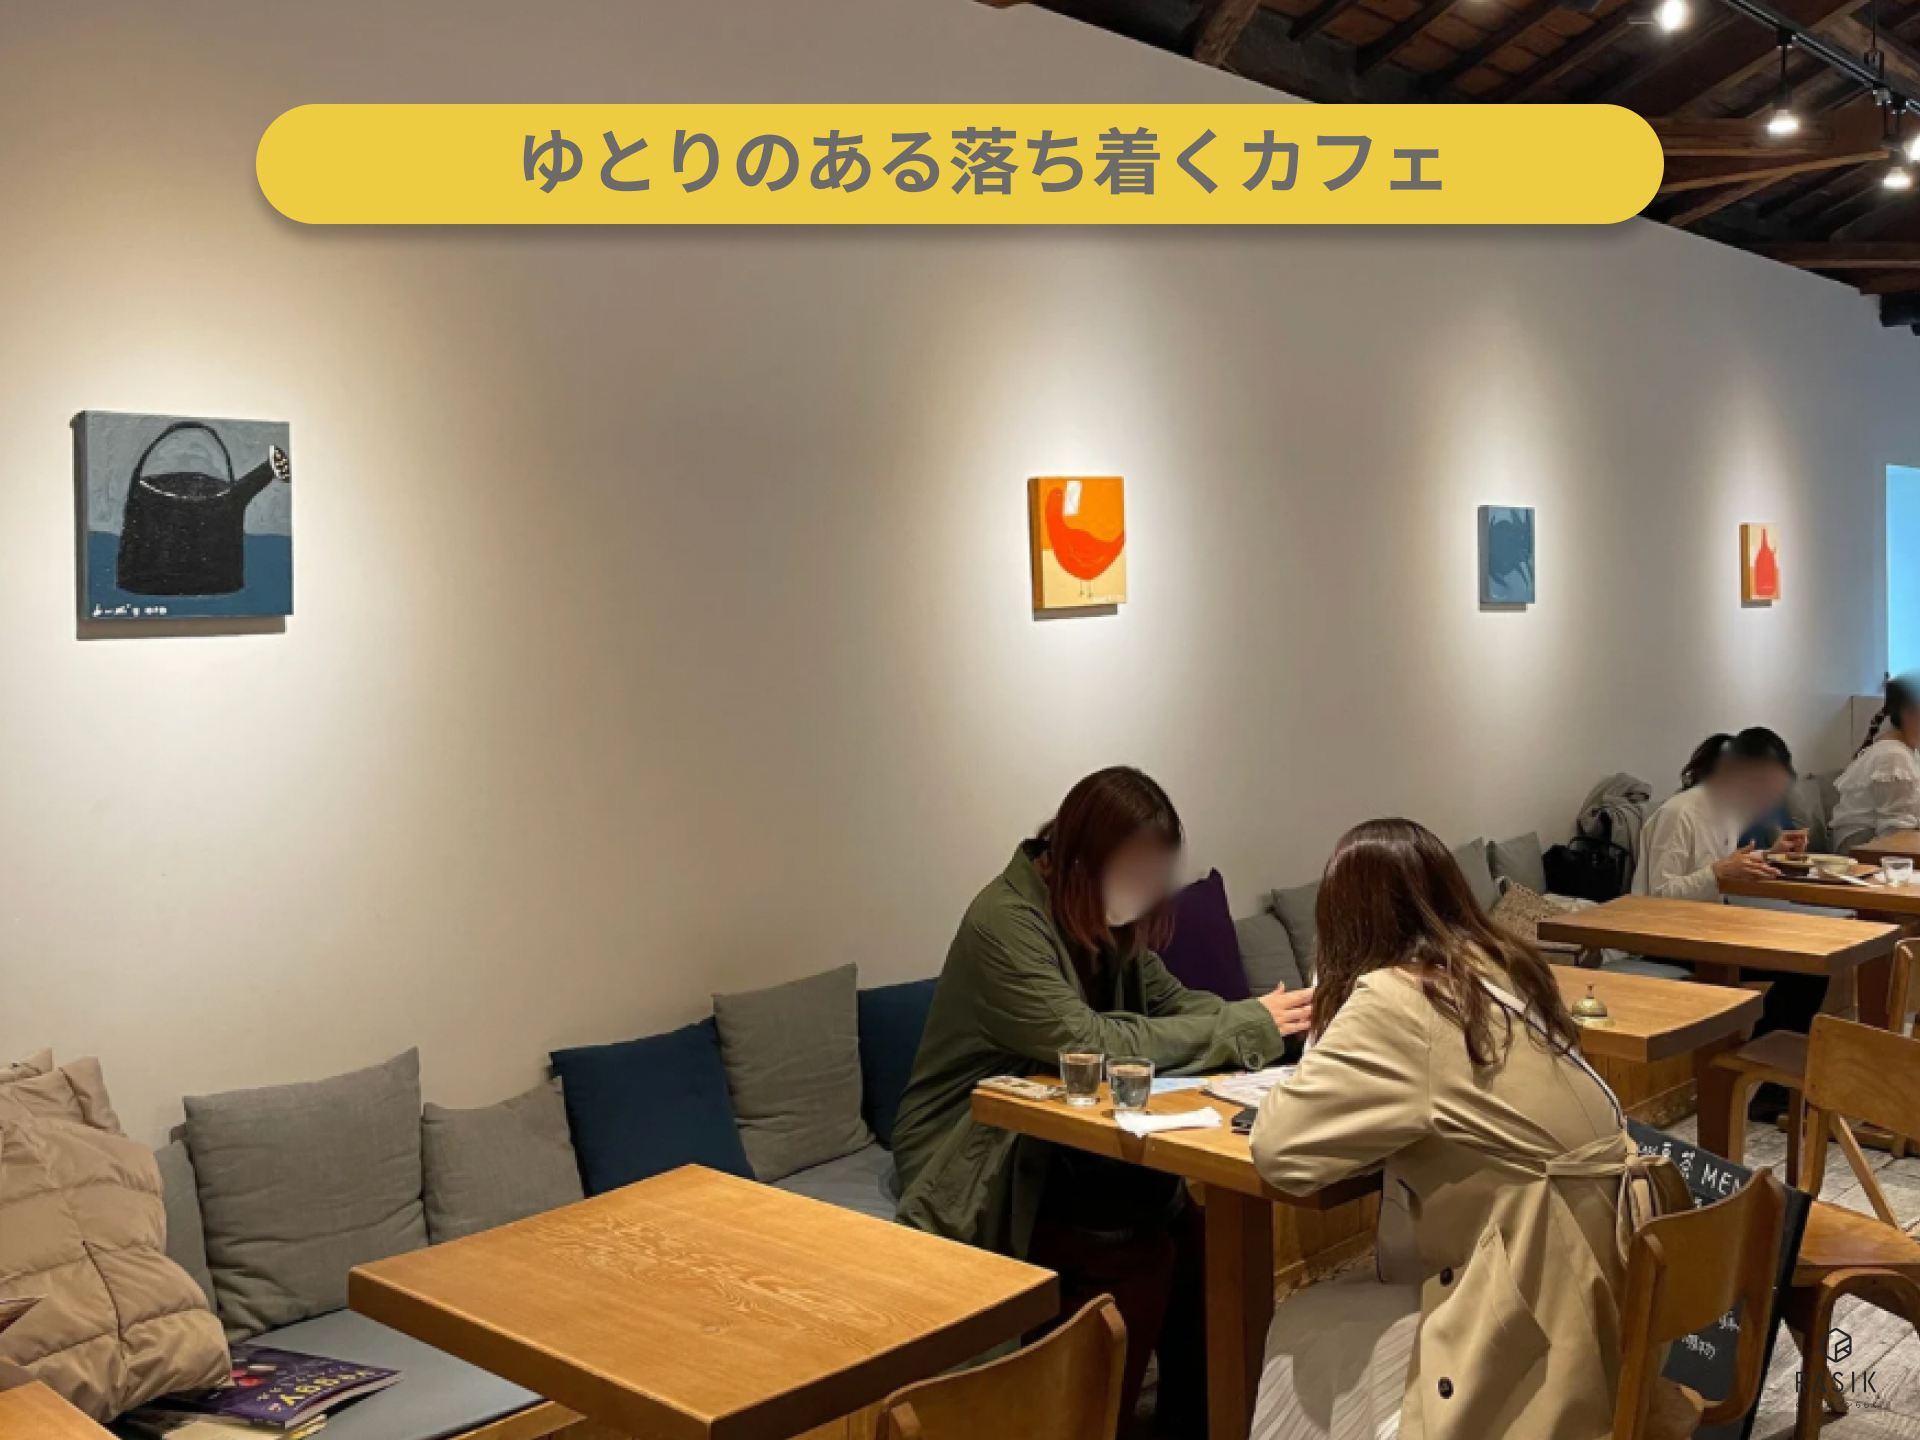 スペースを広めに確保している実際のカフェの画像